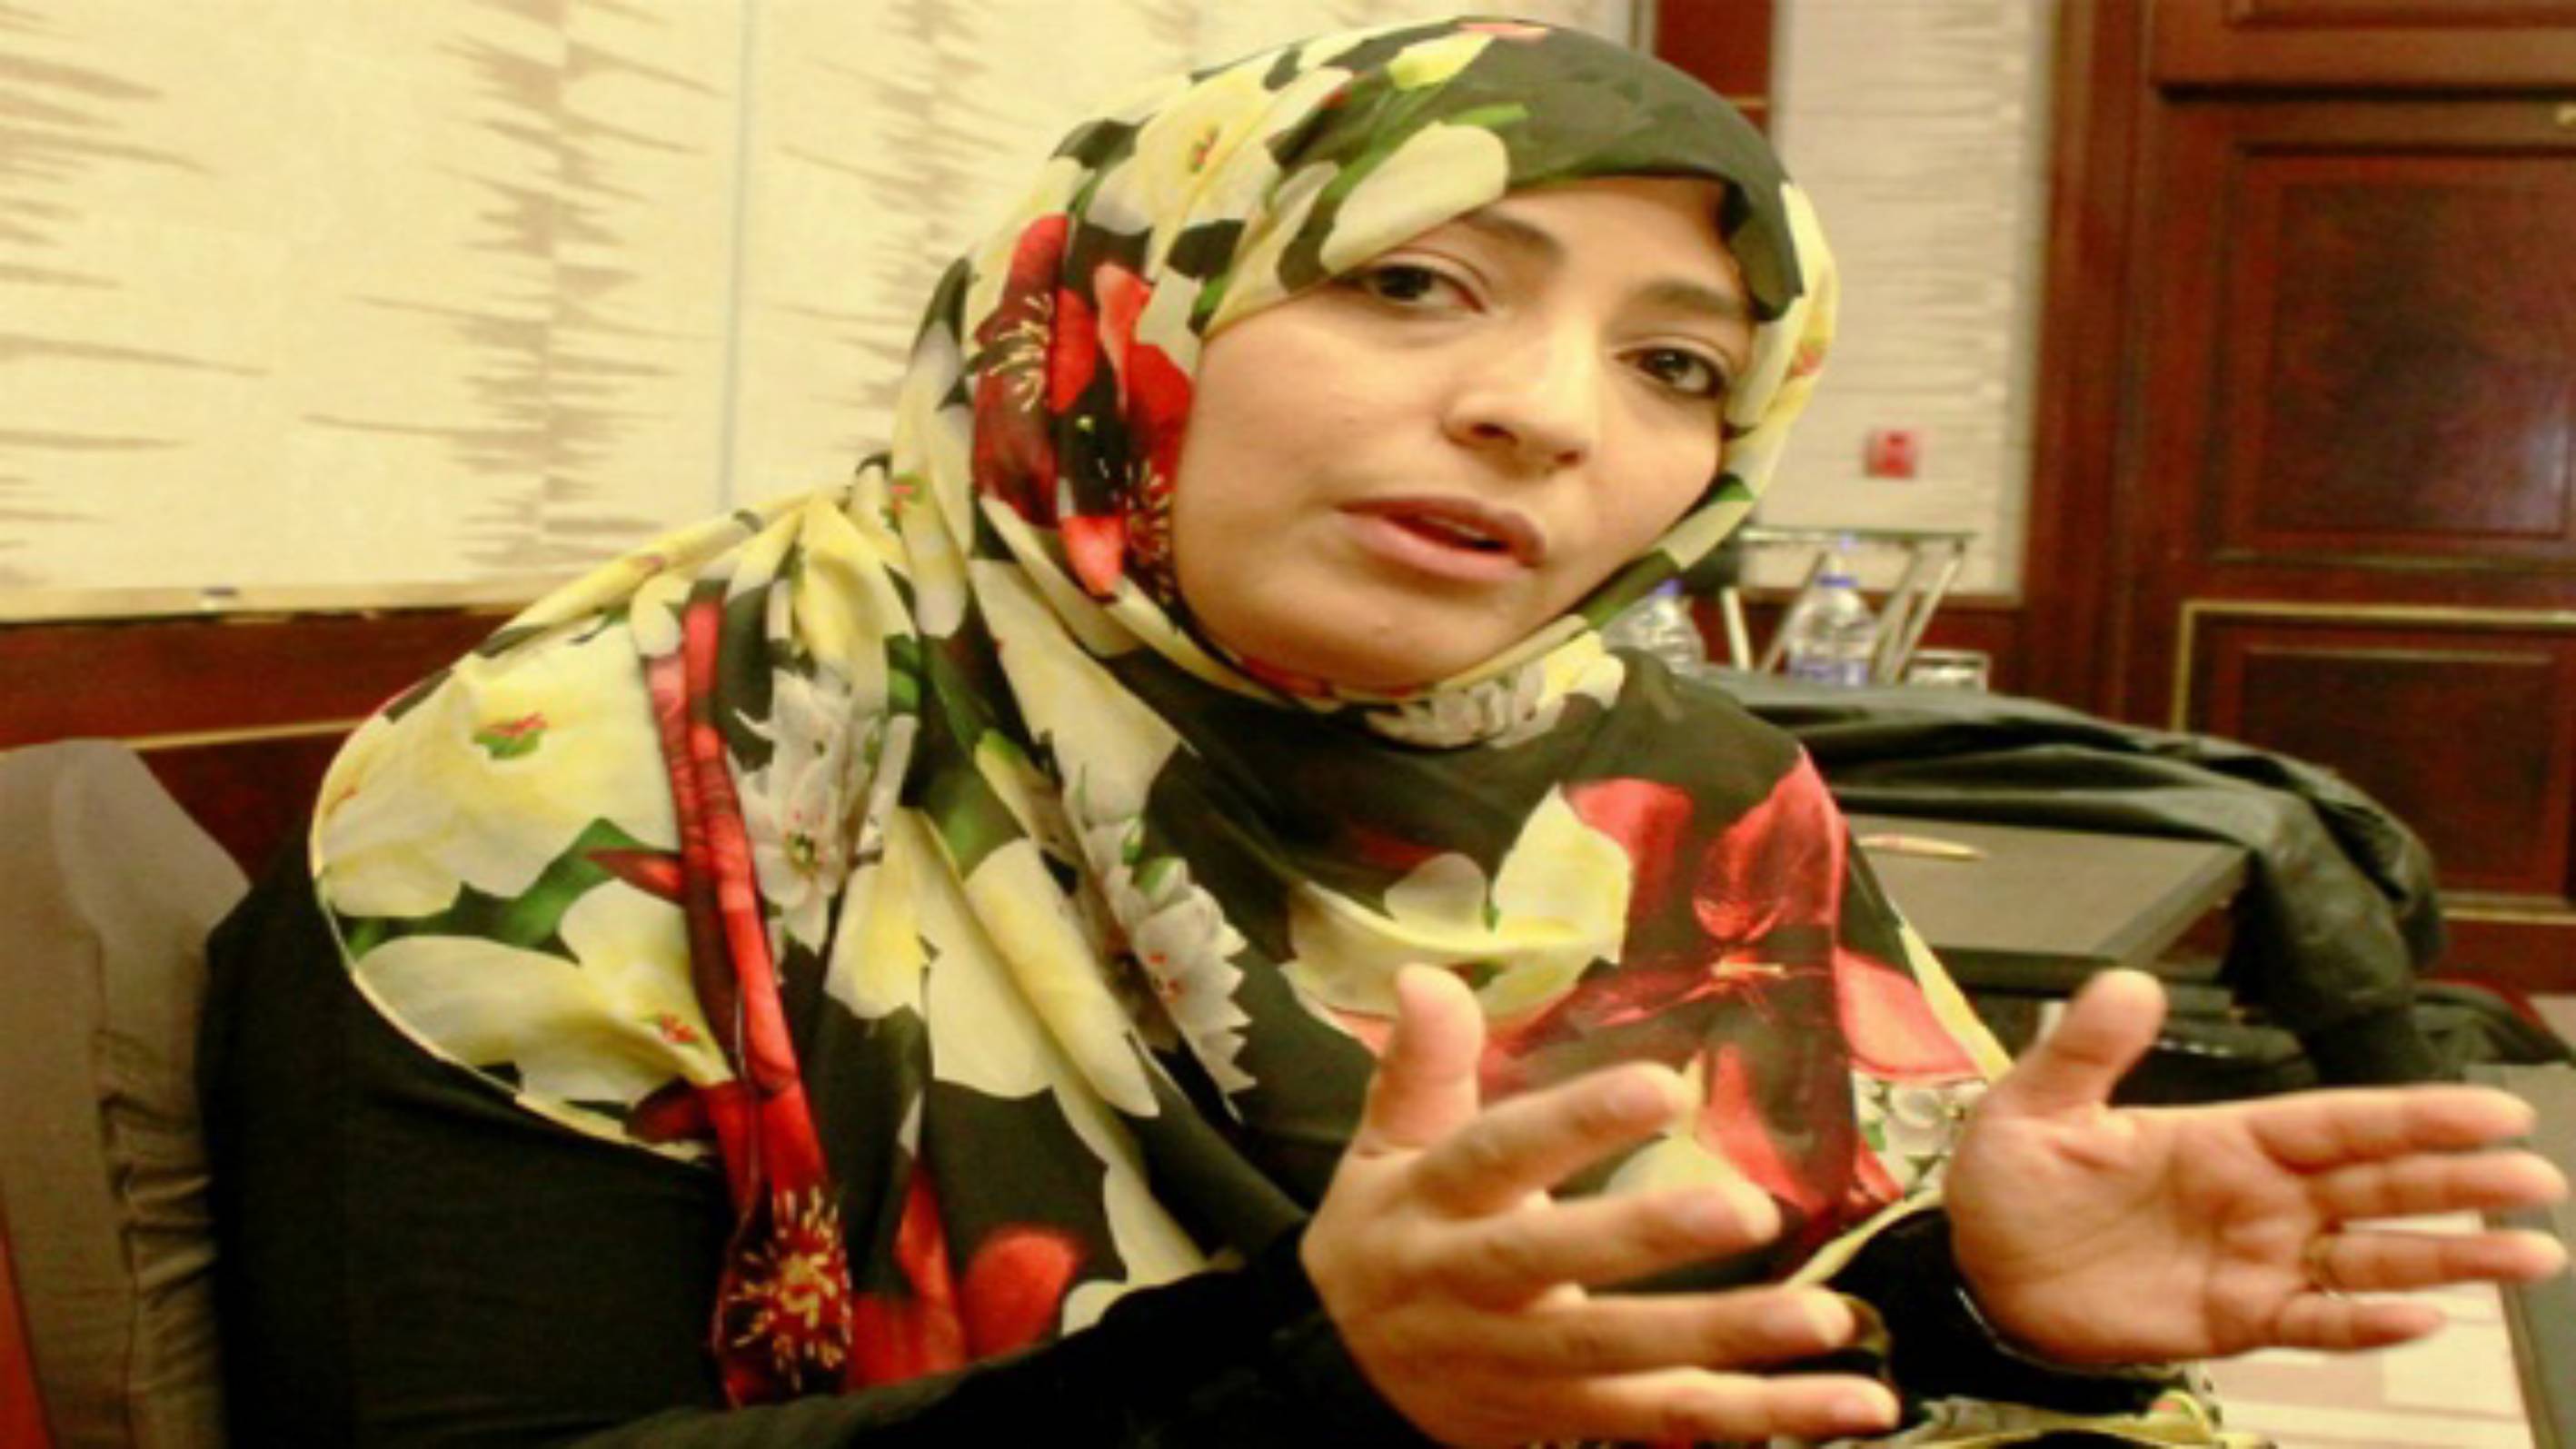 حوار الناشطة الحائزة على جائزة نوبل للسلام توكل كرمان مع صحيفة البلاد الجزائرية